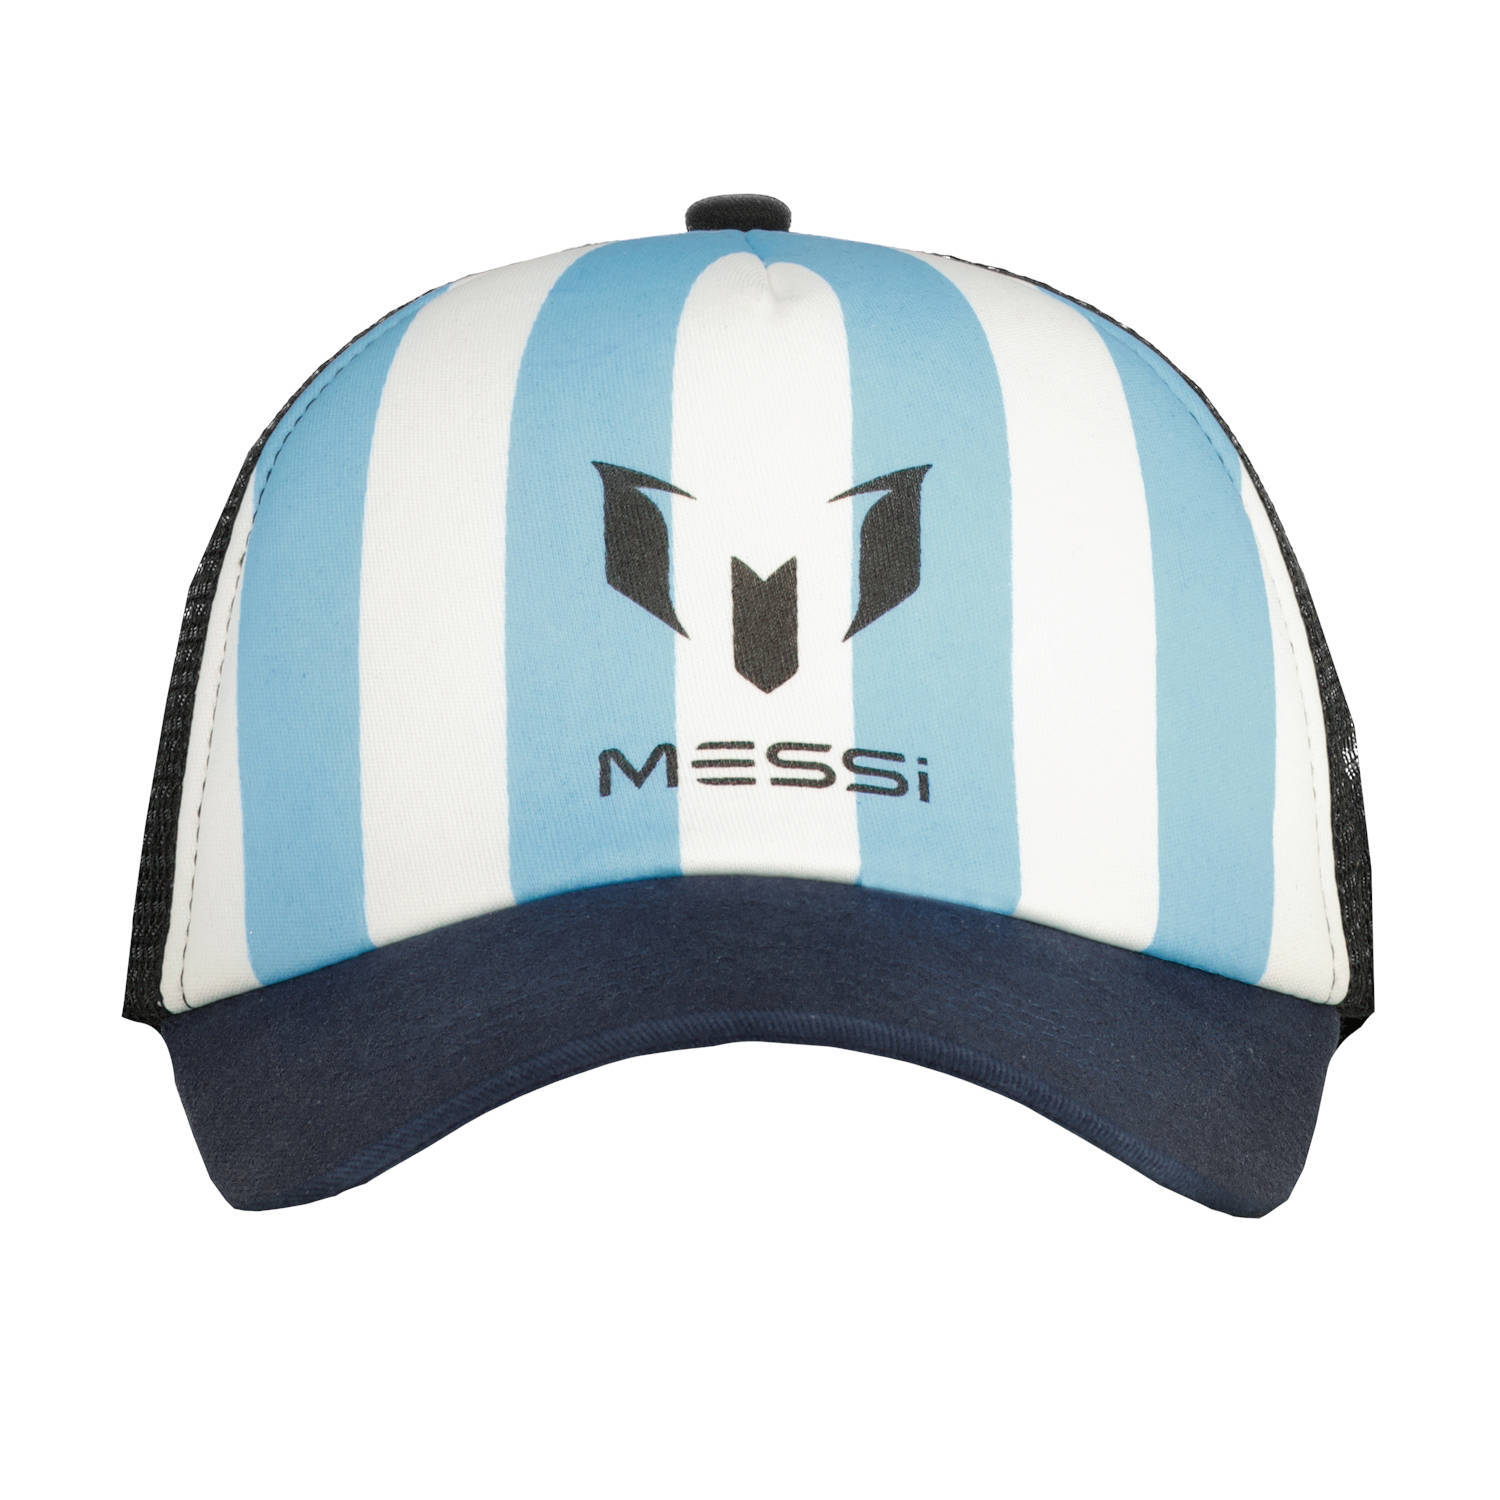 Vingino x Messi gestreepte pet met logo blauw wit